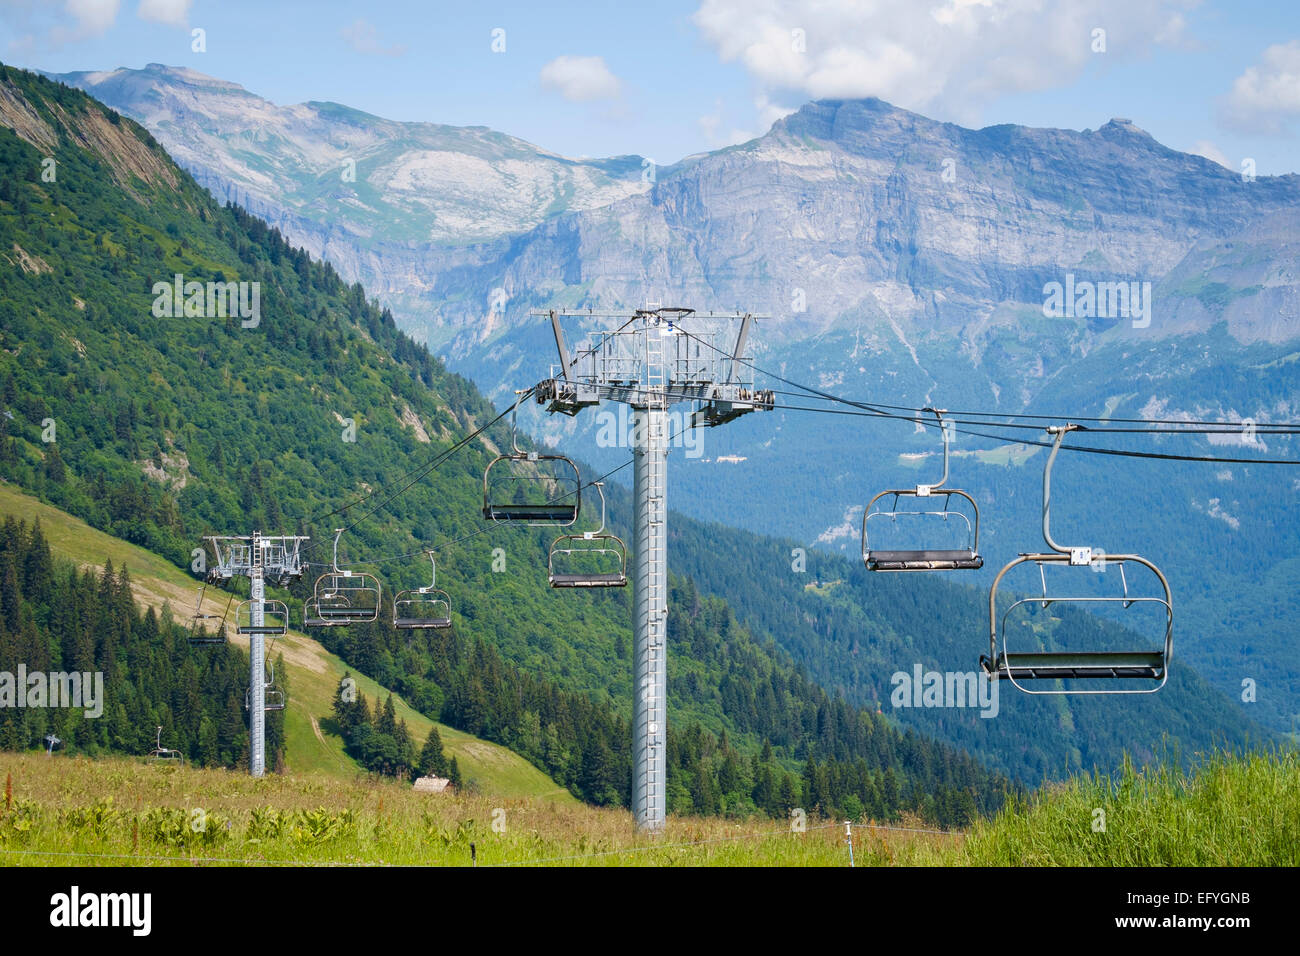 Téléski ou télésiège surplombant la vallée de Bellevue, Alpes, France Banque D'Images